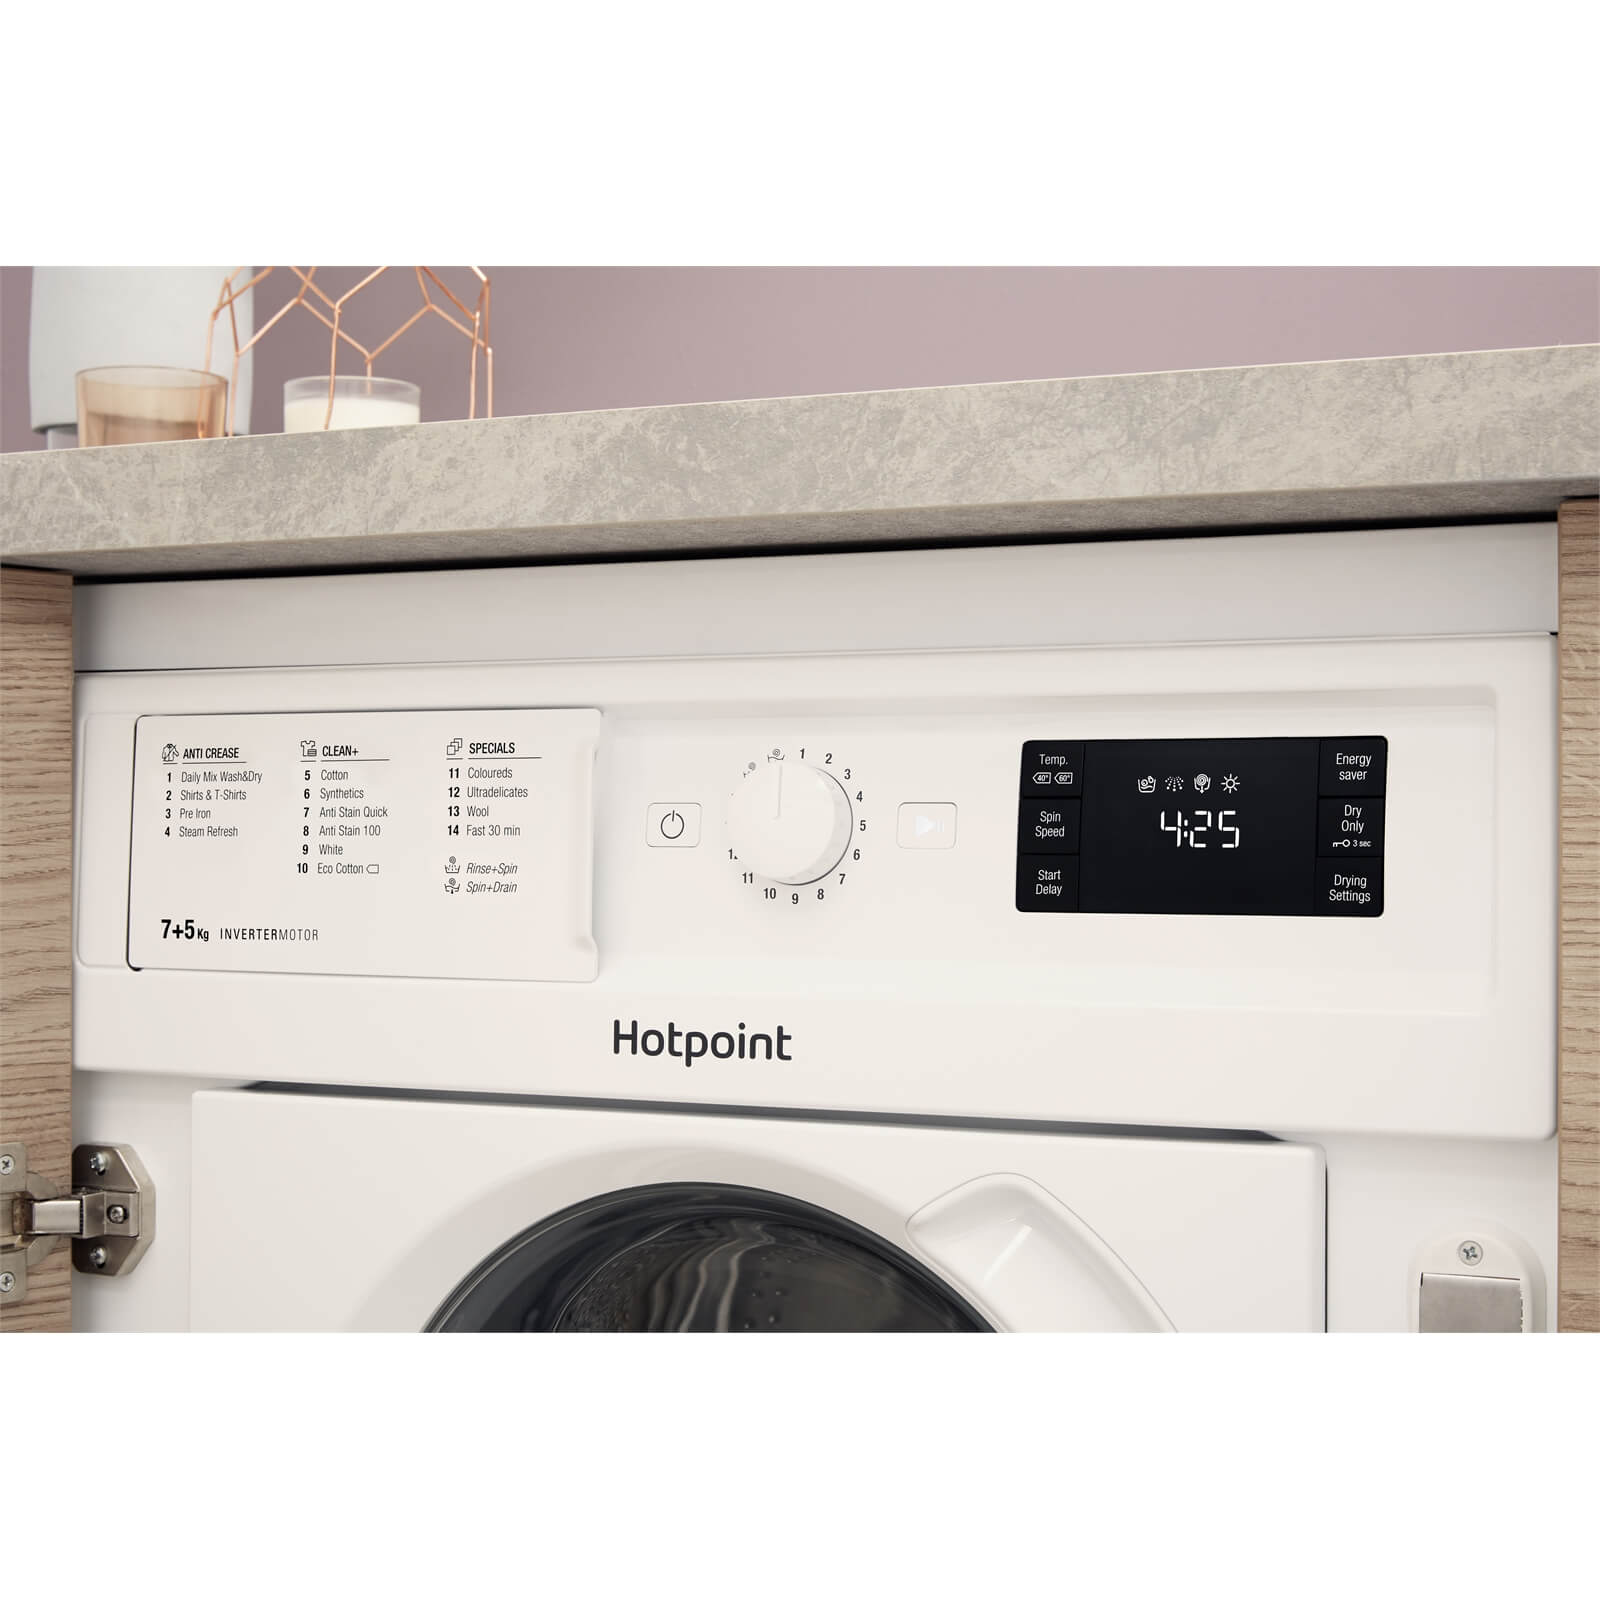 Hotpoint BIWDHG7148 Integrated Washer Dryer